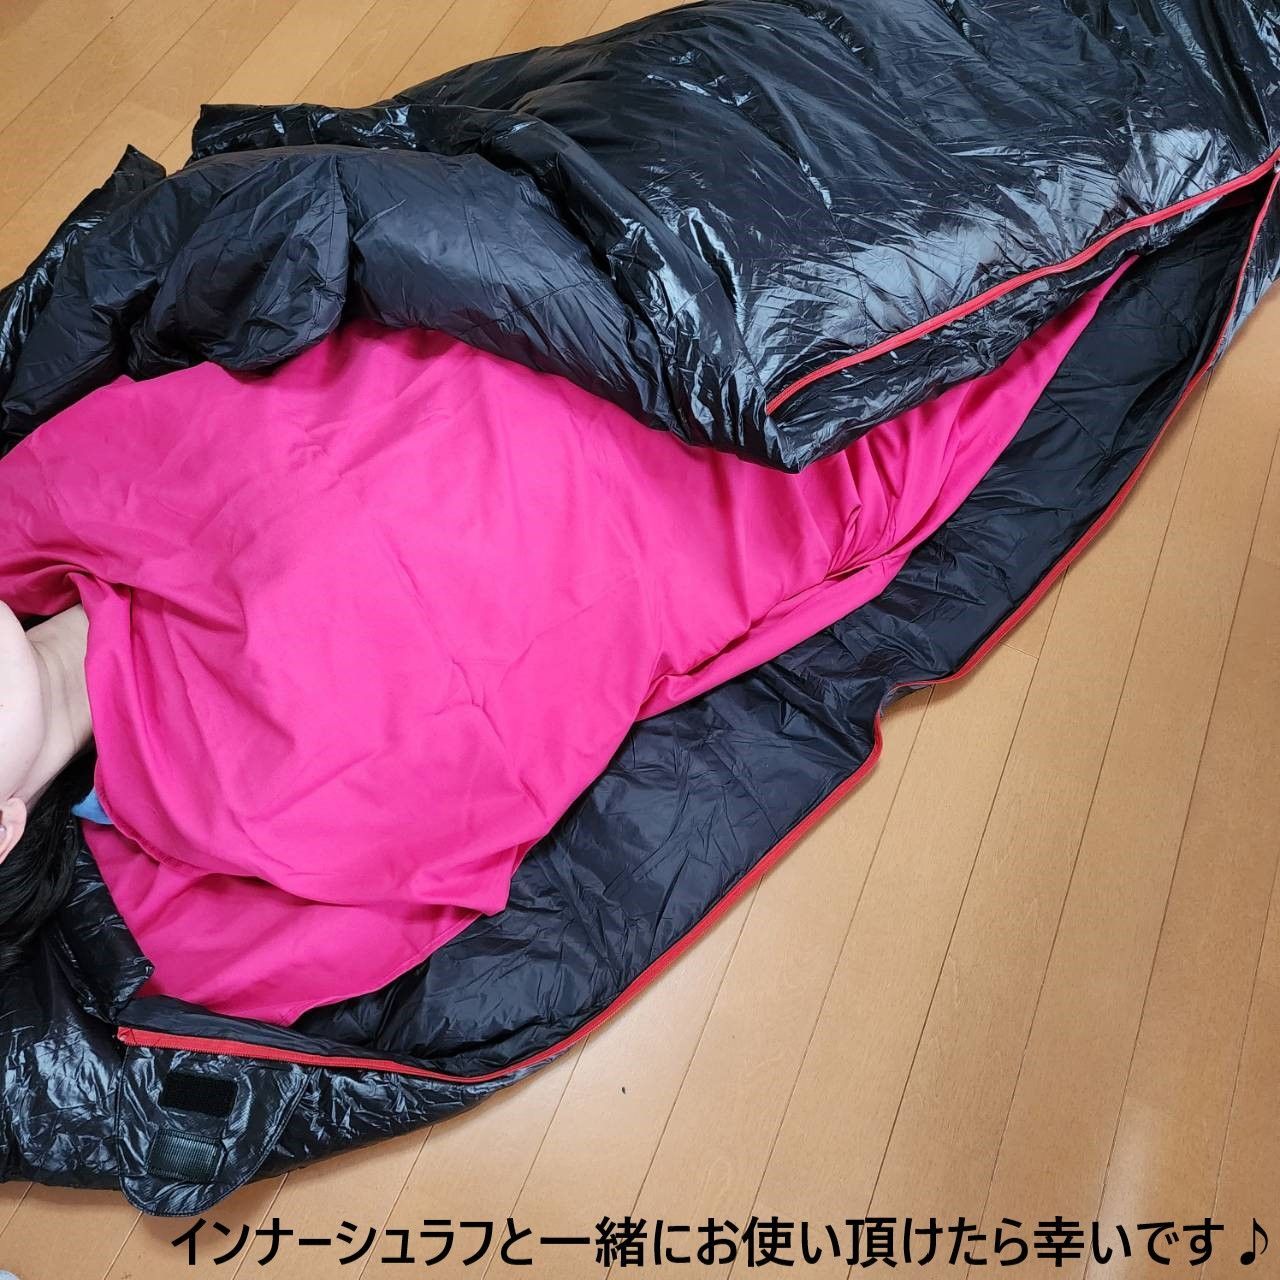 アウトドア 防水 グース ダウン マミー型 寝袋 シュラフ